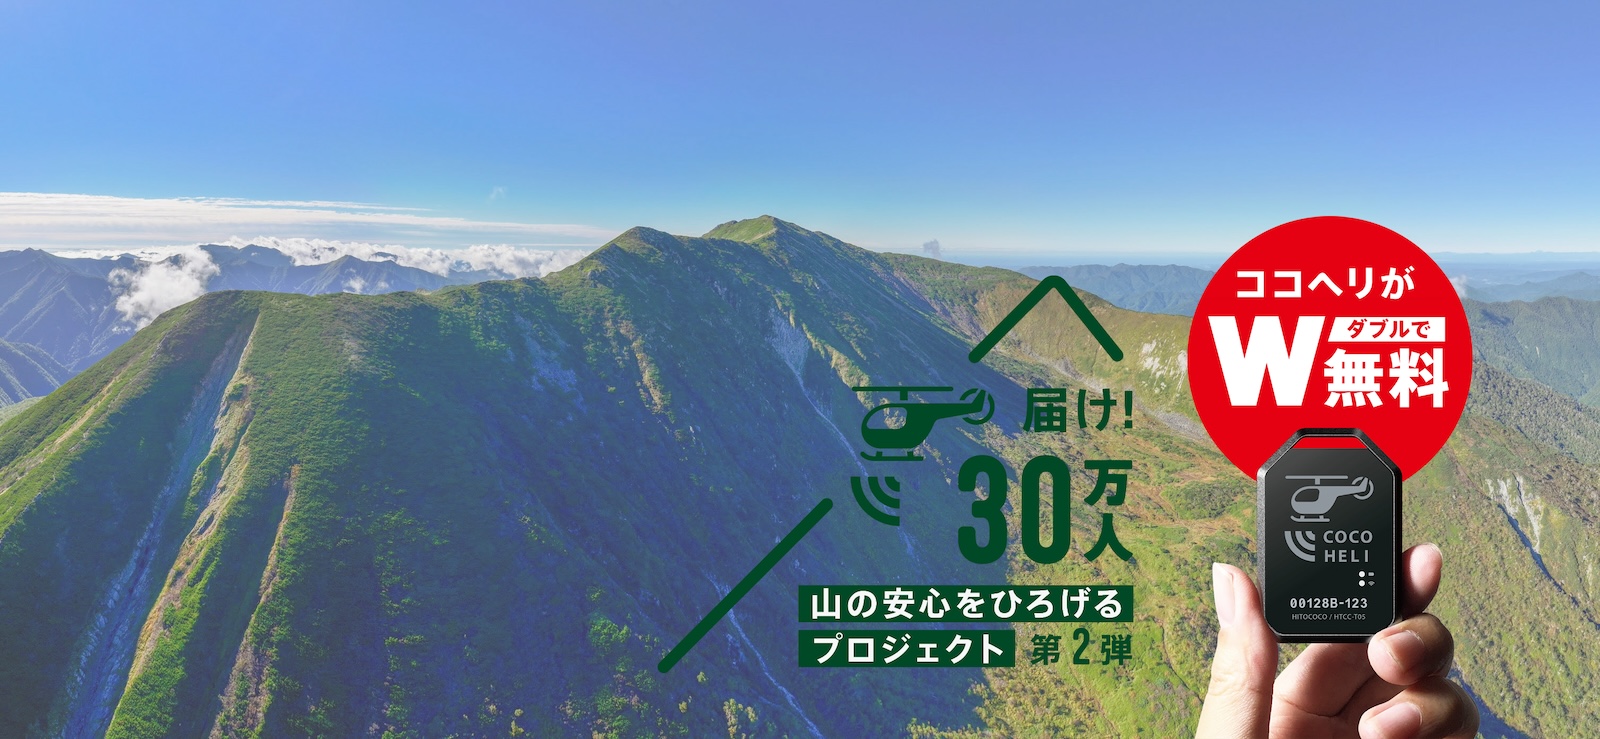 幌尻岳登山（額平川ルート）利用者の「ココヘリ」加入を推奨